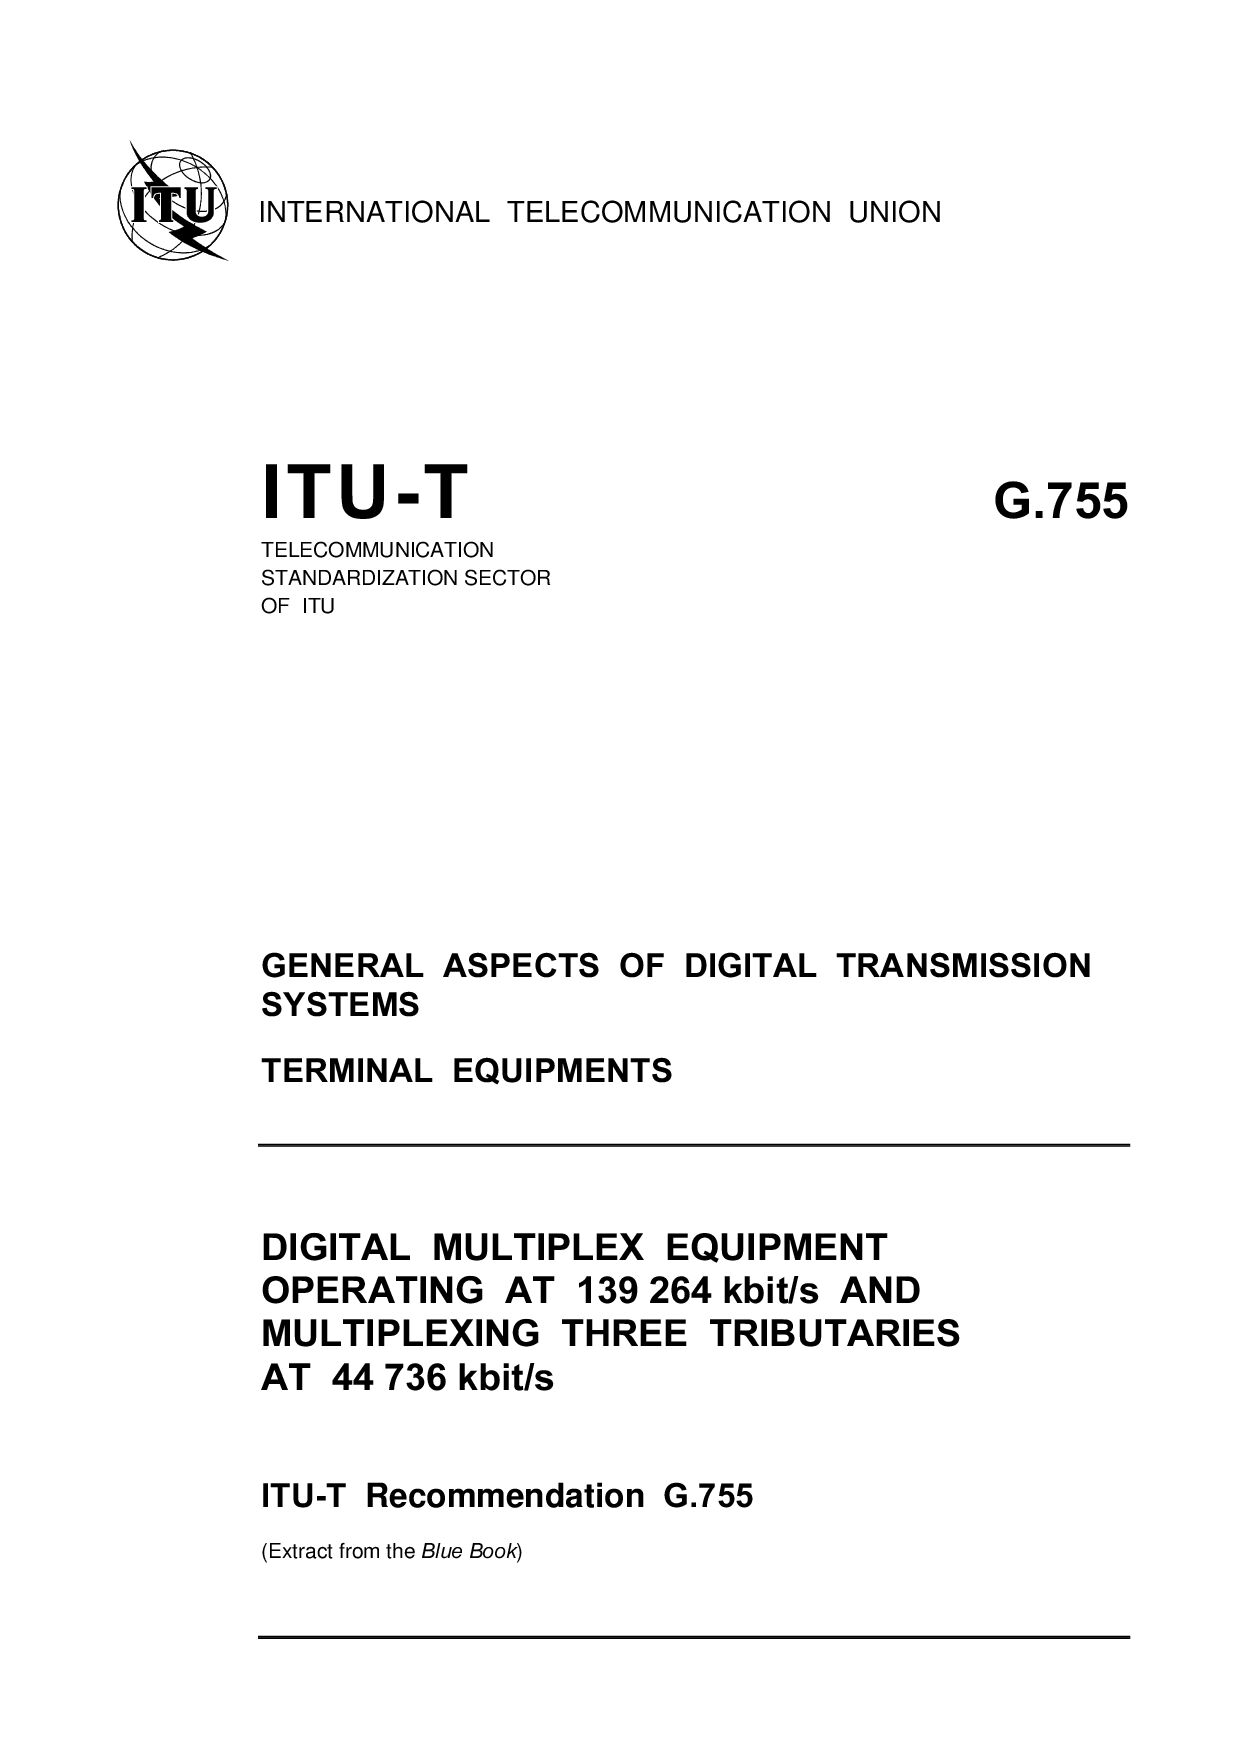 ITU-T G.755-1993